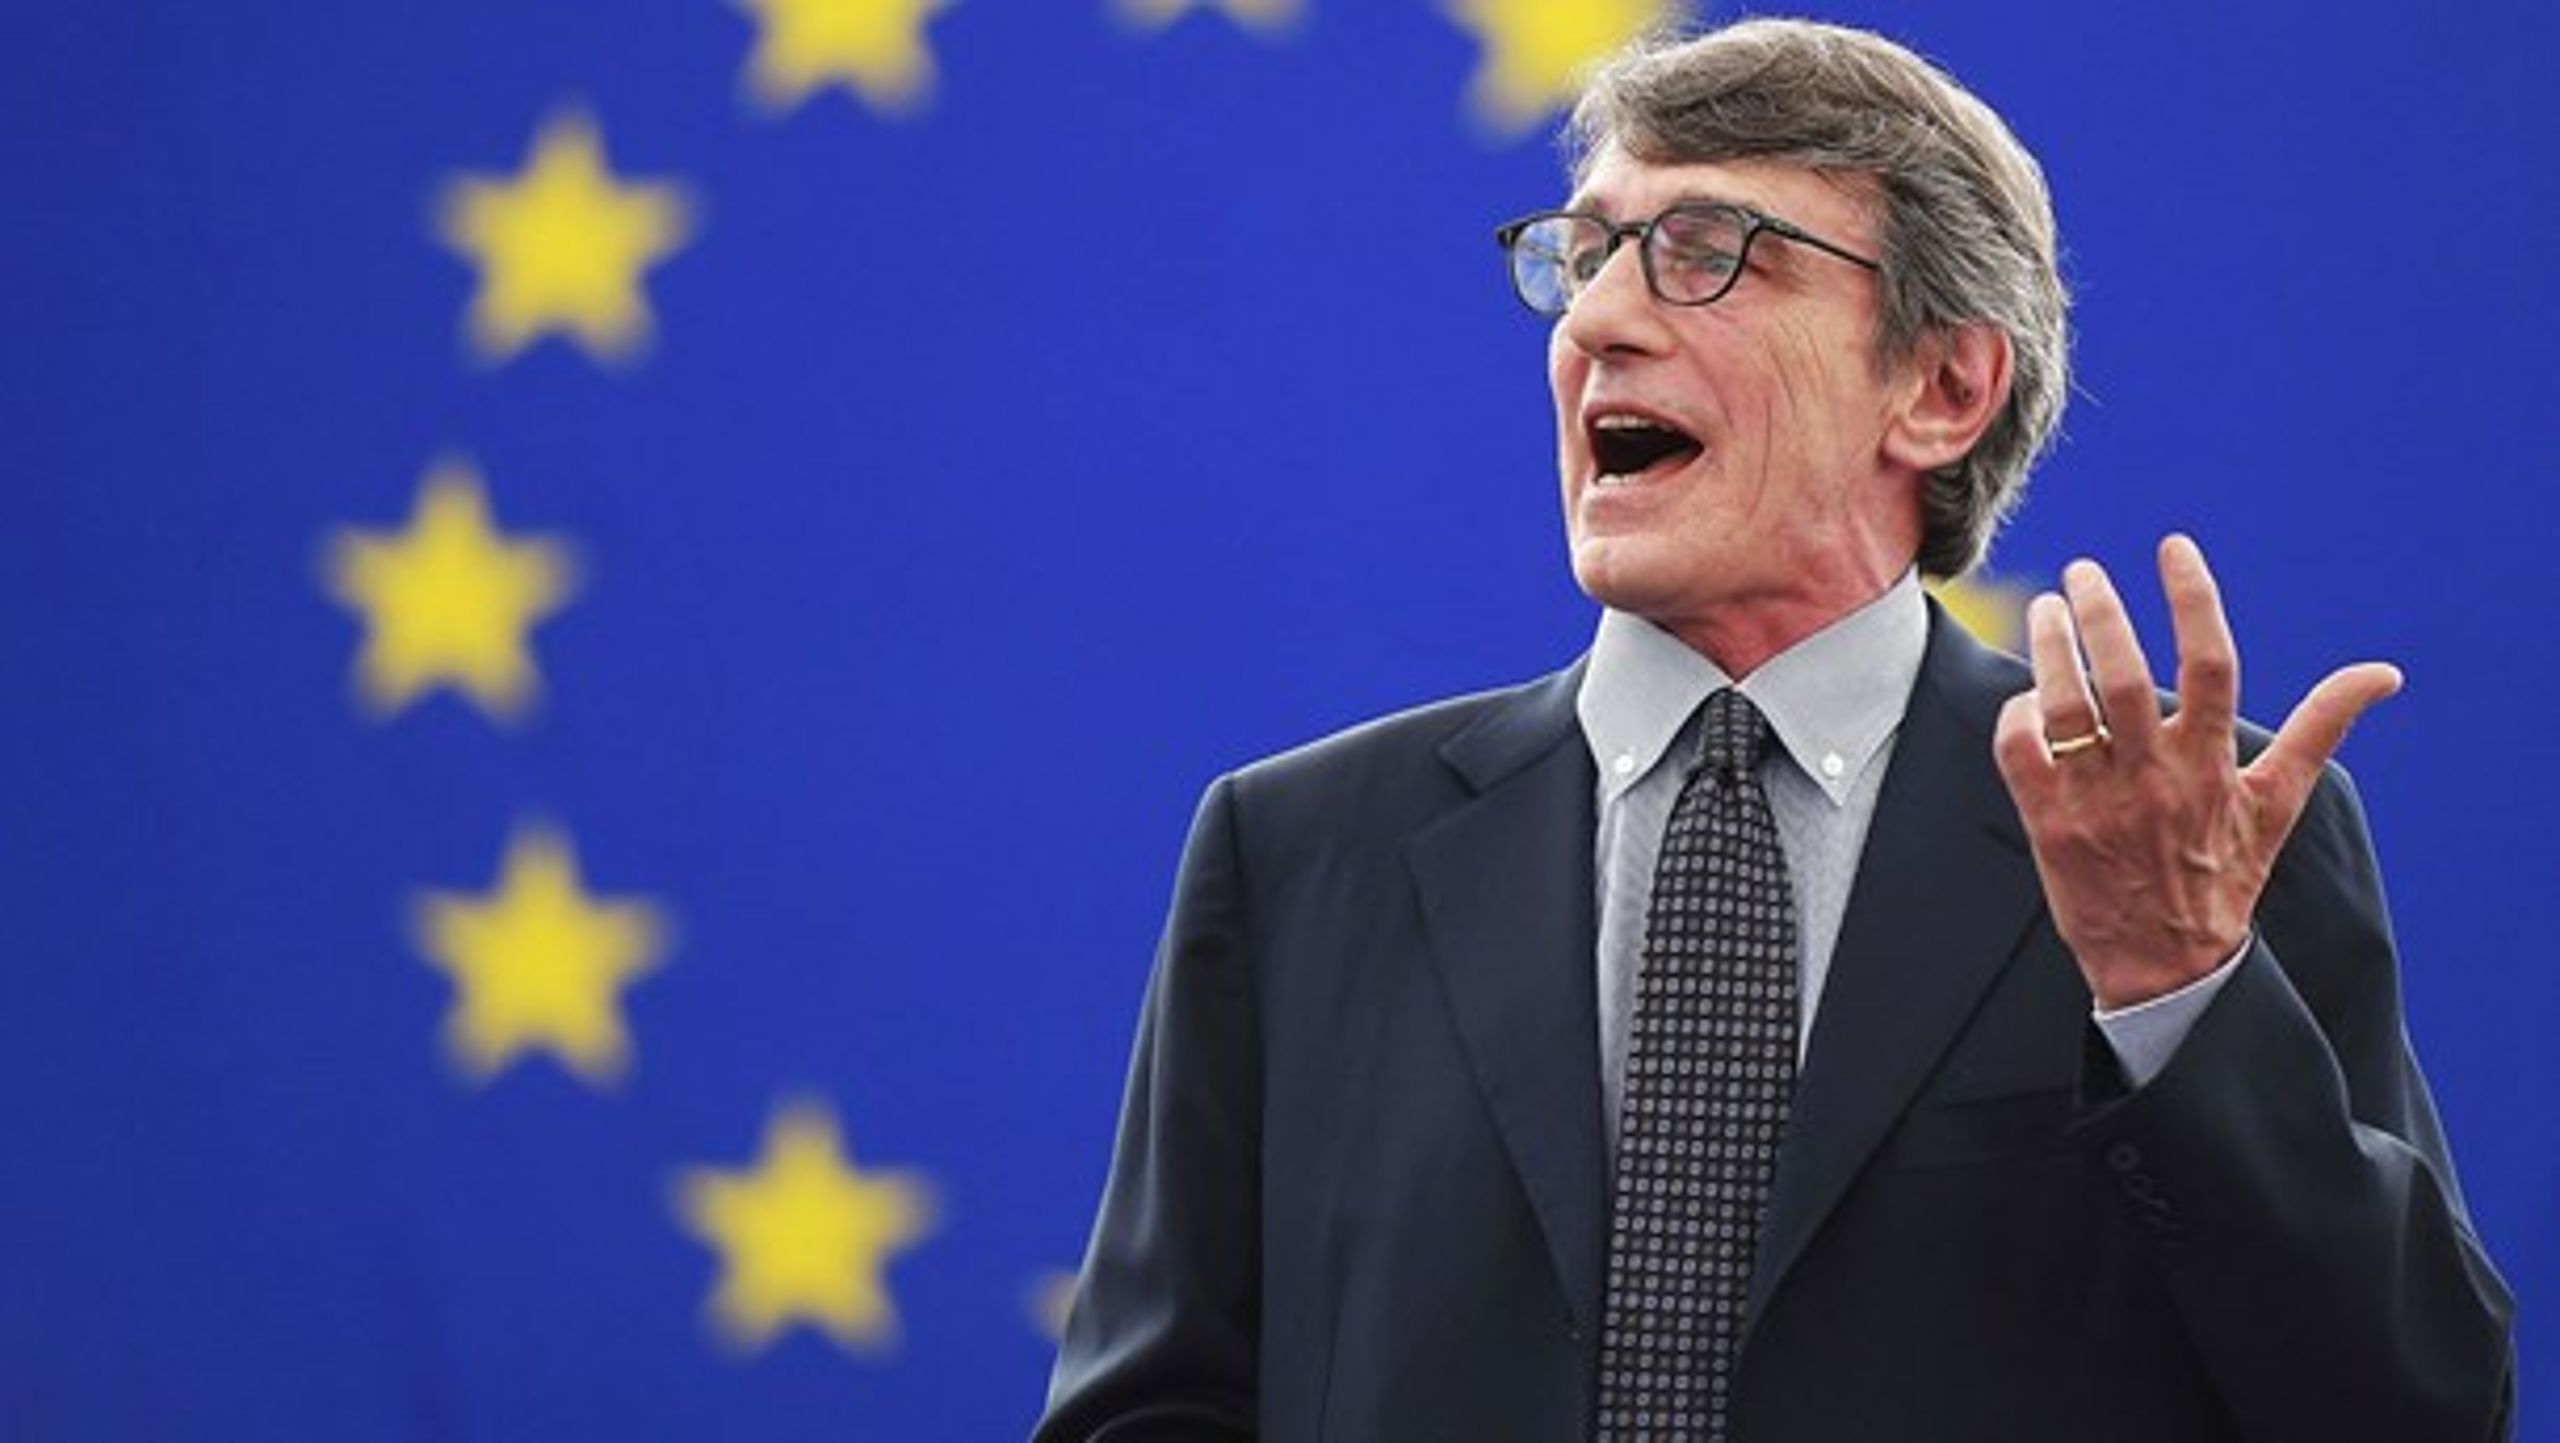 David hvem? Socialdemokraten David Maria Sassoli, som onsdag blev valgt til ny formand for Europa-Parlamentet, er stort set ukendt uden for hjemlandet Italien.